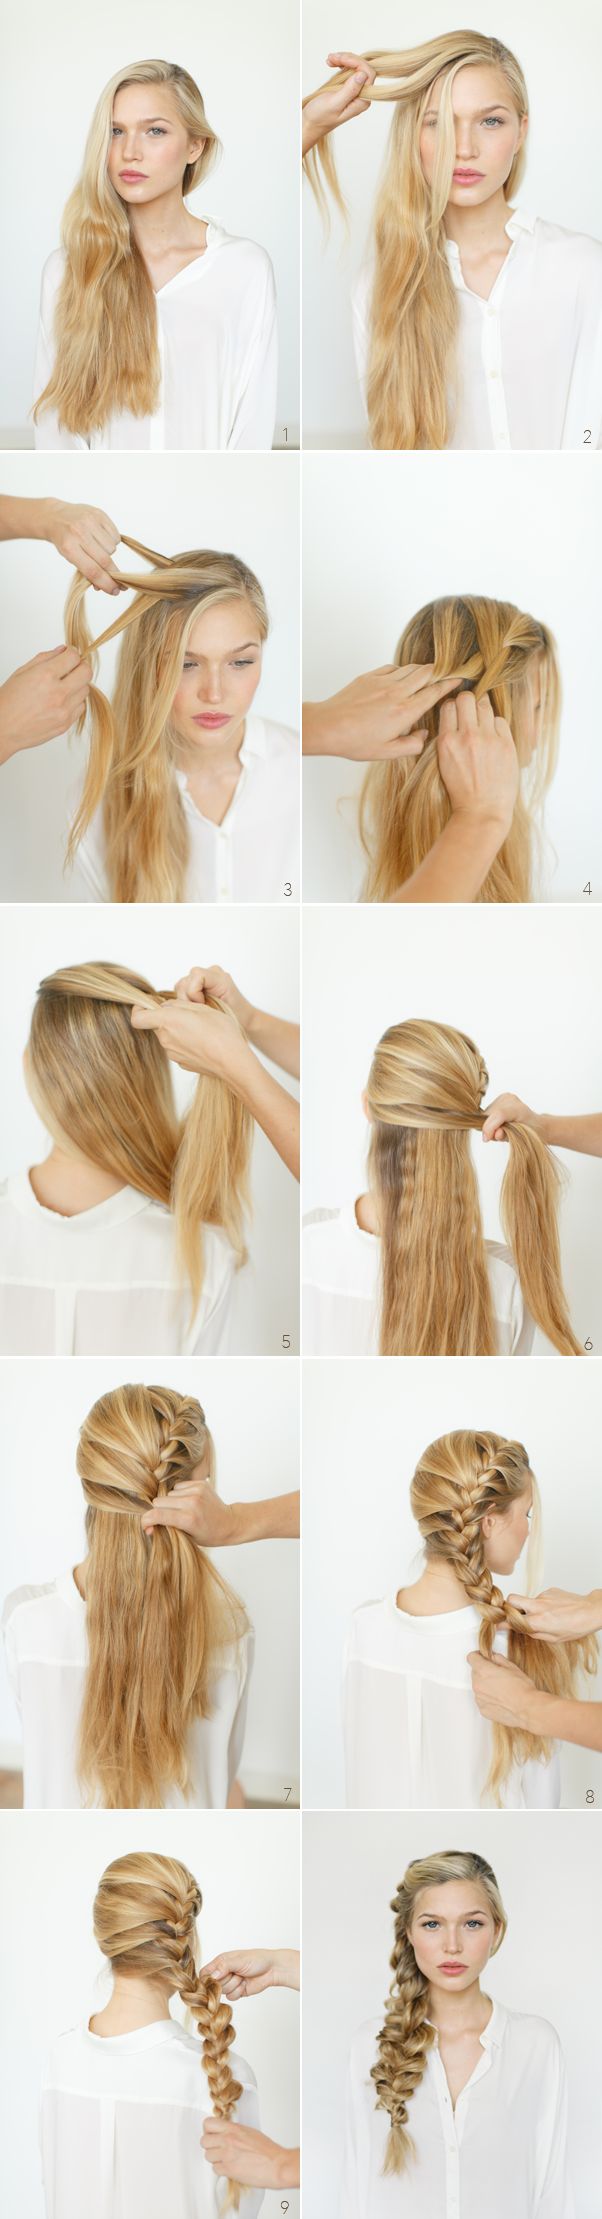 여름 머리] 땋은 머리 종류와 땋은 머리 스타일 : 네이버 블로그